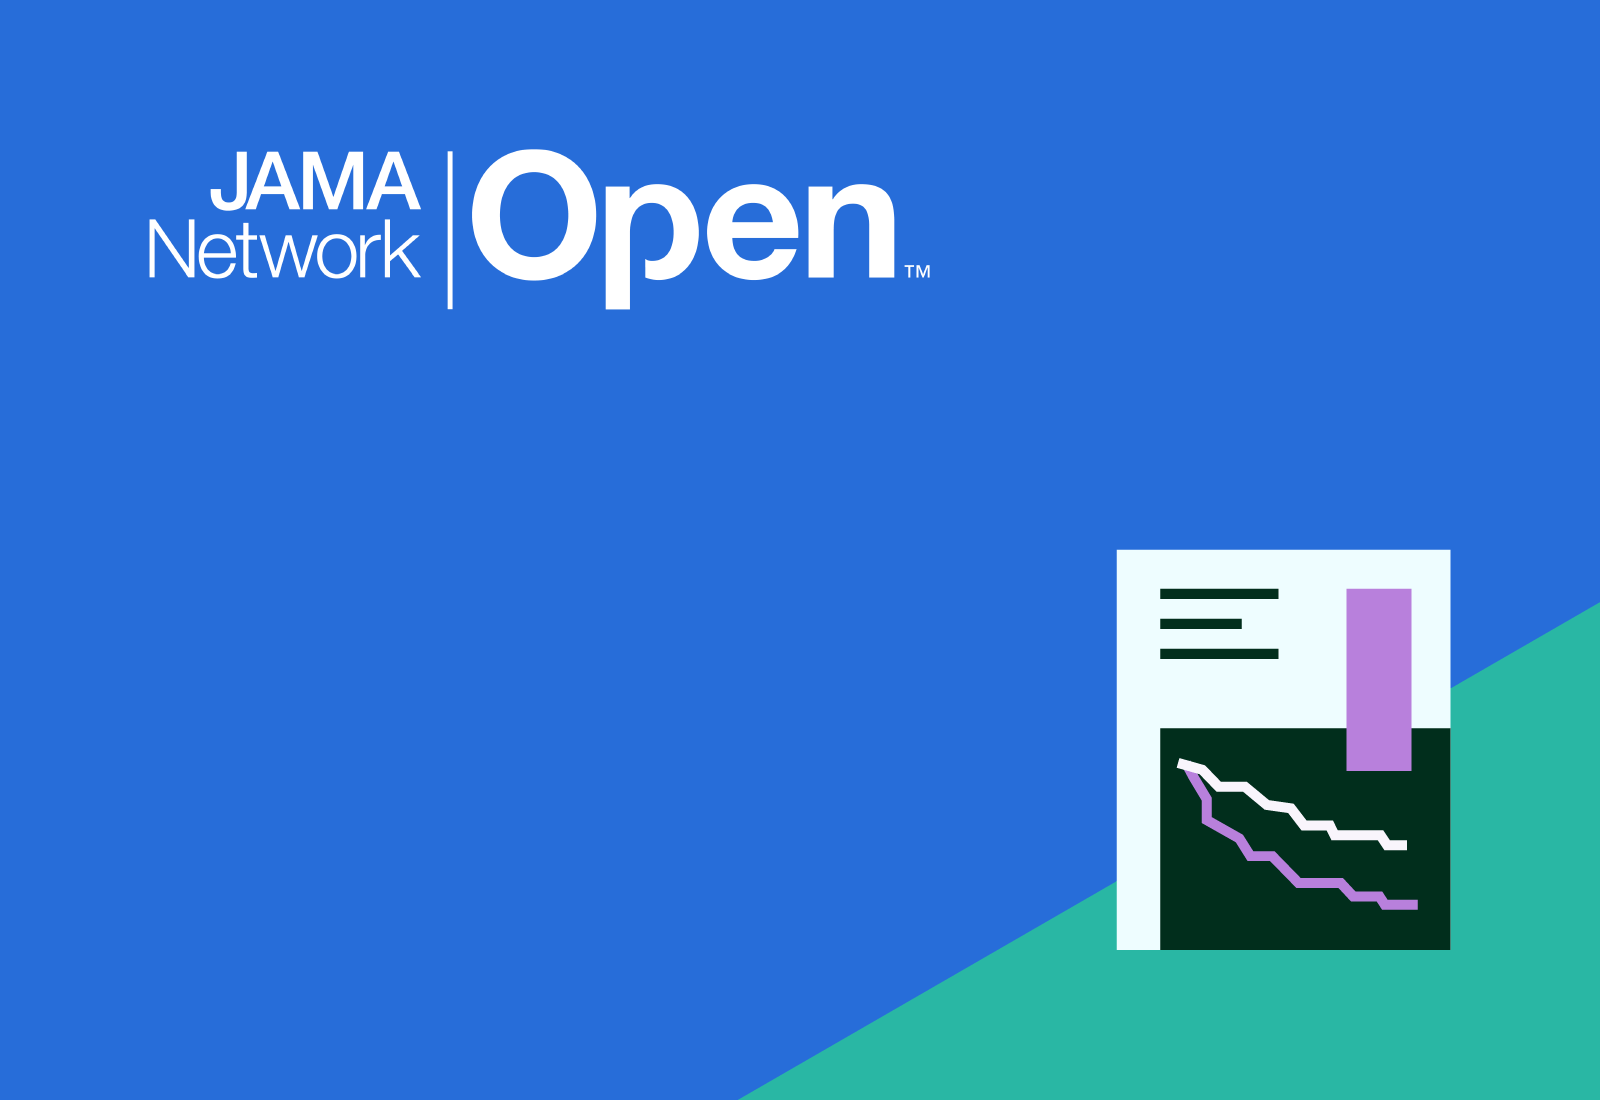 jama-network-open-flatiron-publication-large